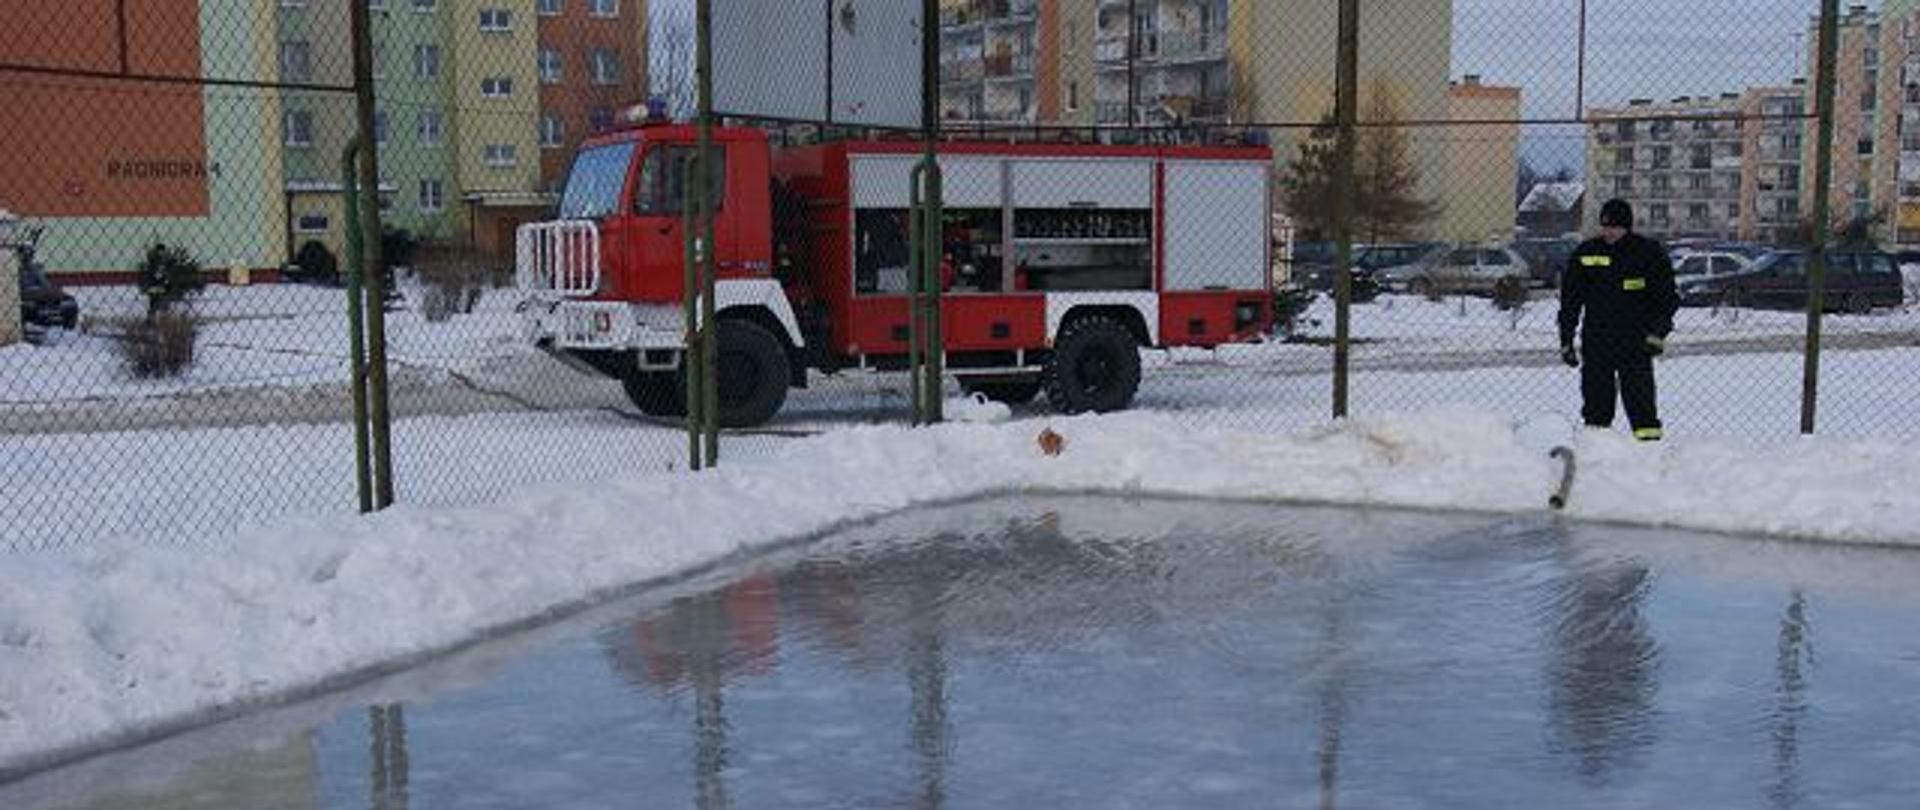 Zdjęcie przedstawia strażaka z linią wodną do stworzenia lodowiska dla dzieci, w tle samochód bojowy